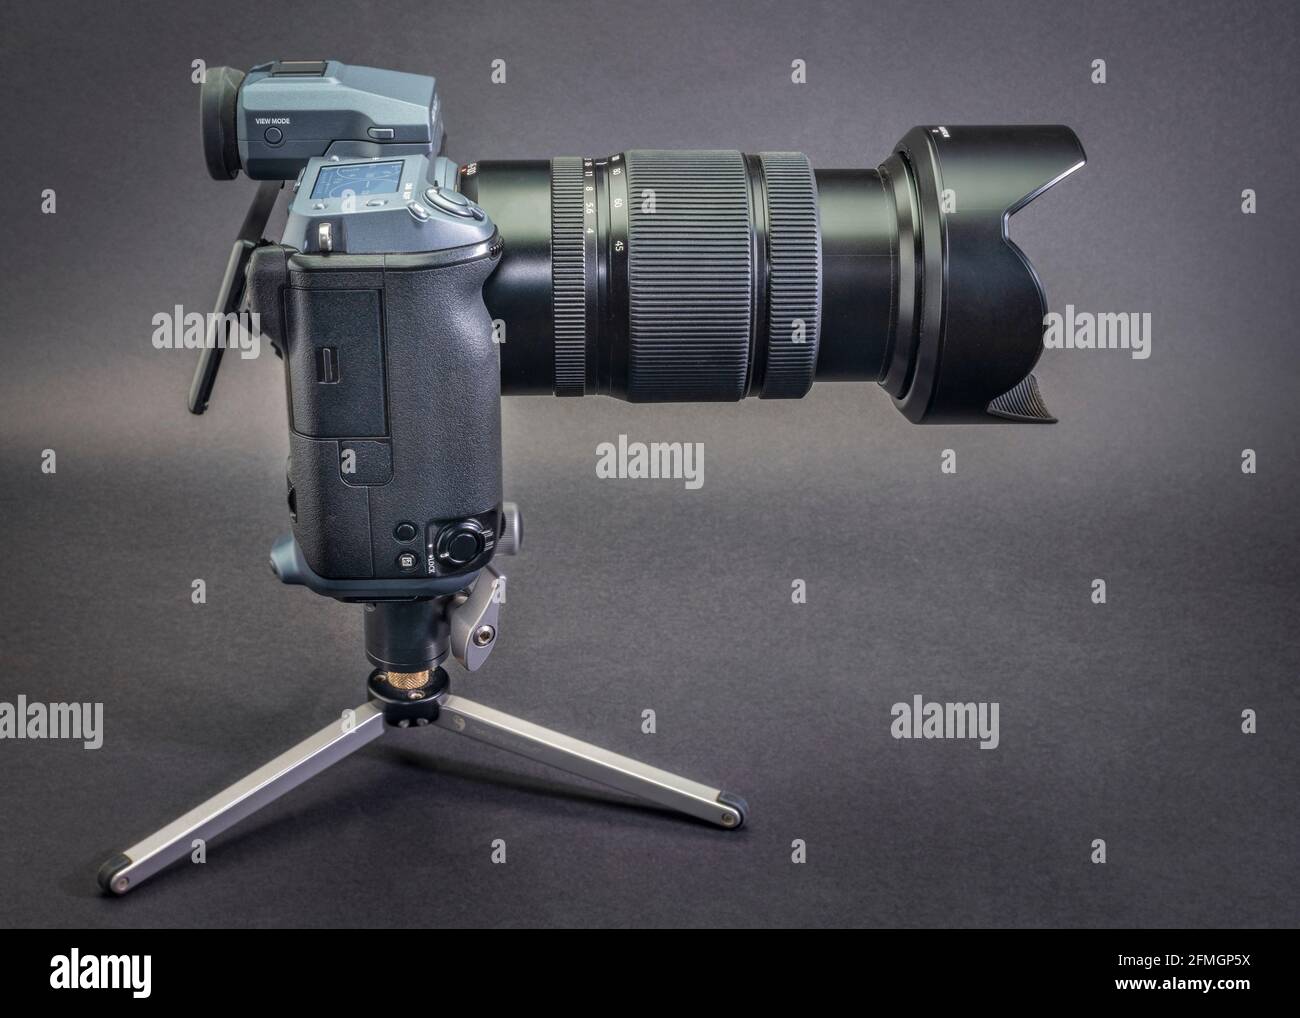 Fort Collins, CO, USA - 9. Dezember 2020: Fujifilm GFX 100 Mittelformat spiegellose Kamera auf einem Tischstativ mit 45-100mm f/4 Zoomobjektiv. Stockfoto